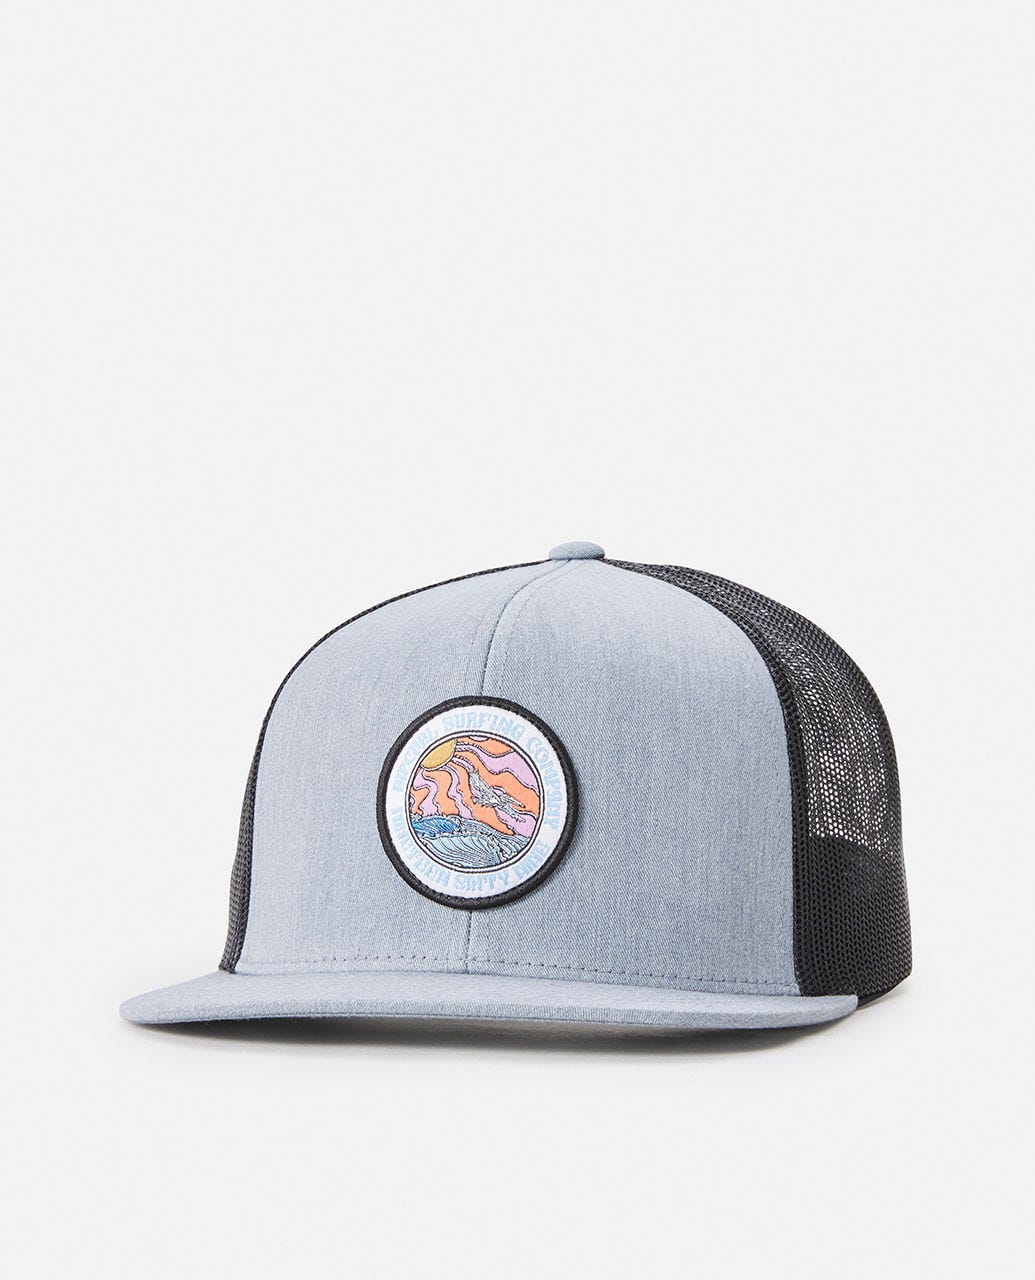 Rip Curl Custom Trucker Hat - 3474 Grey Heather - Sun Diego Boardshop